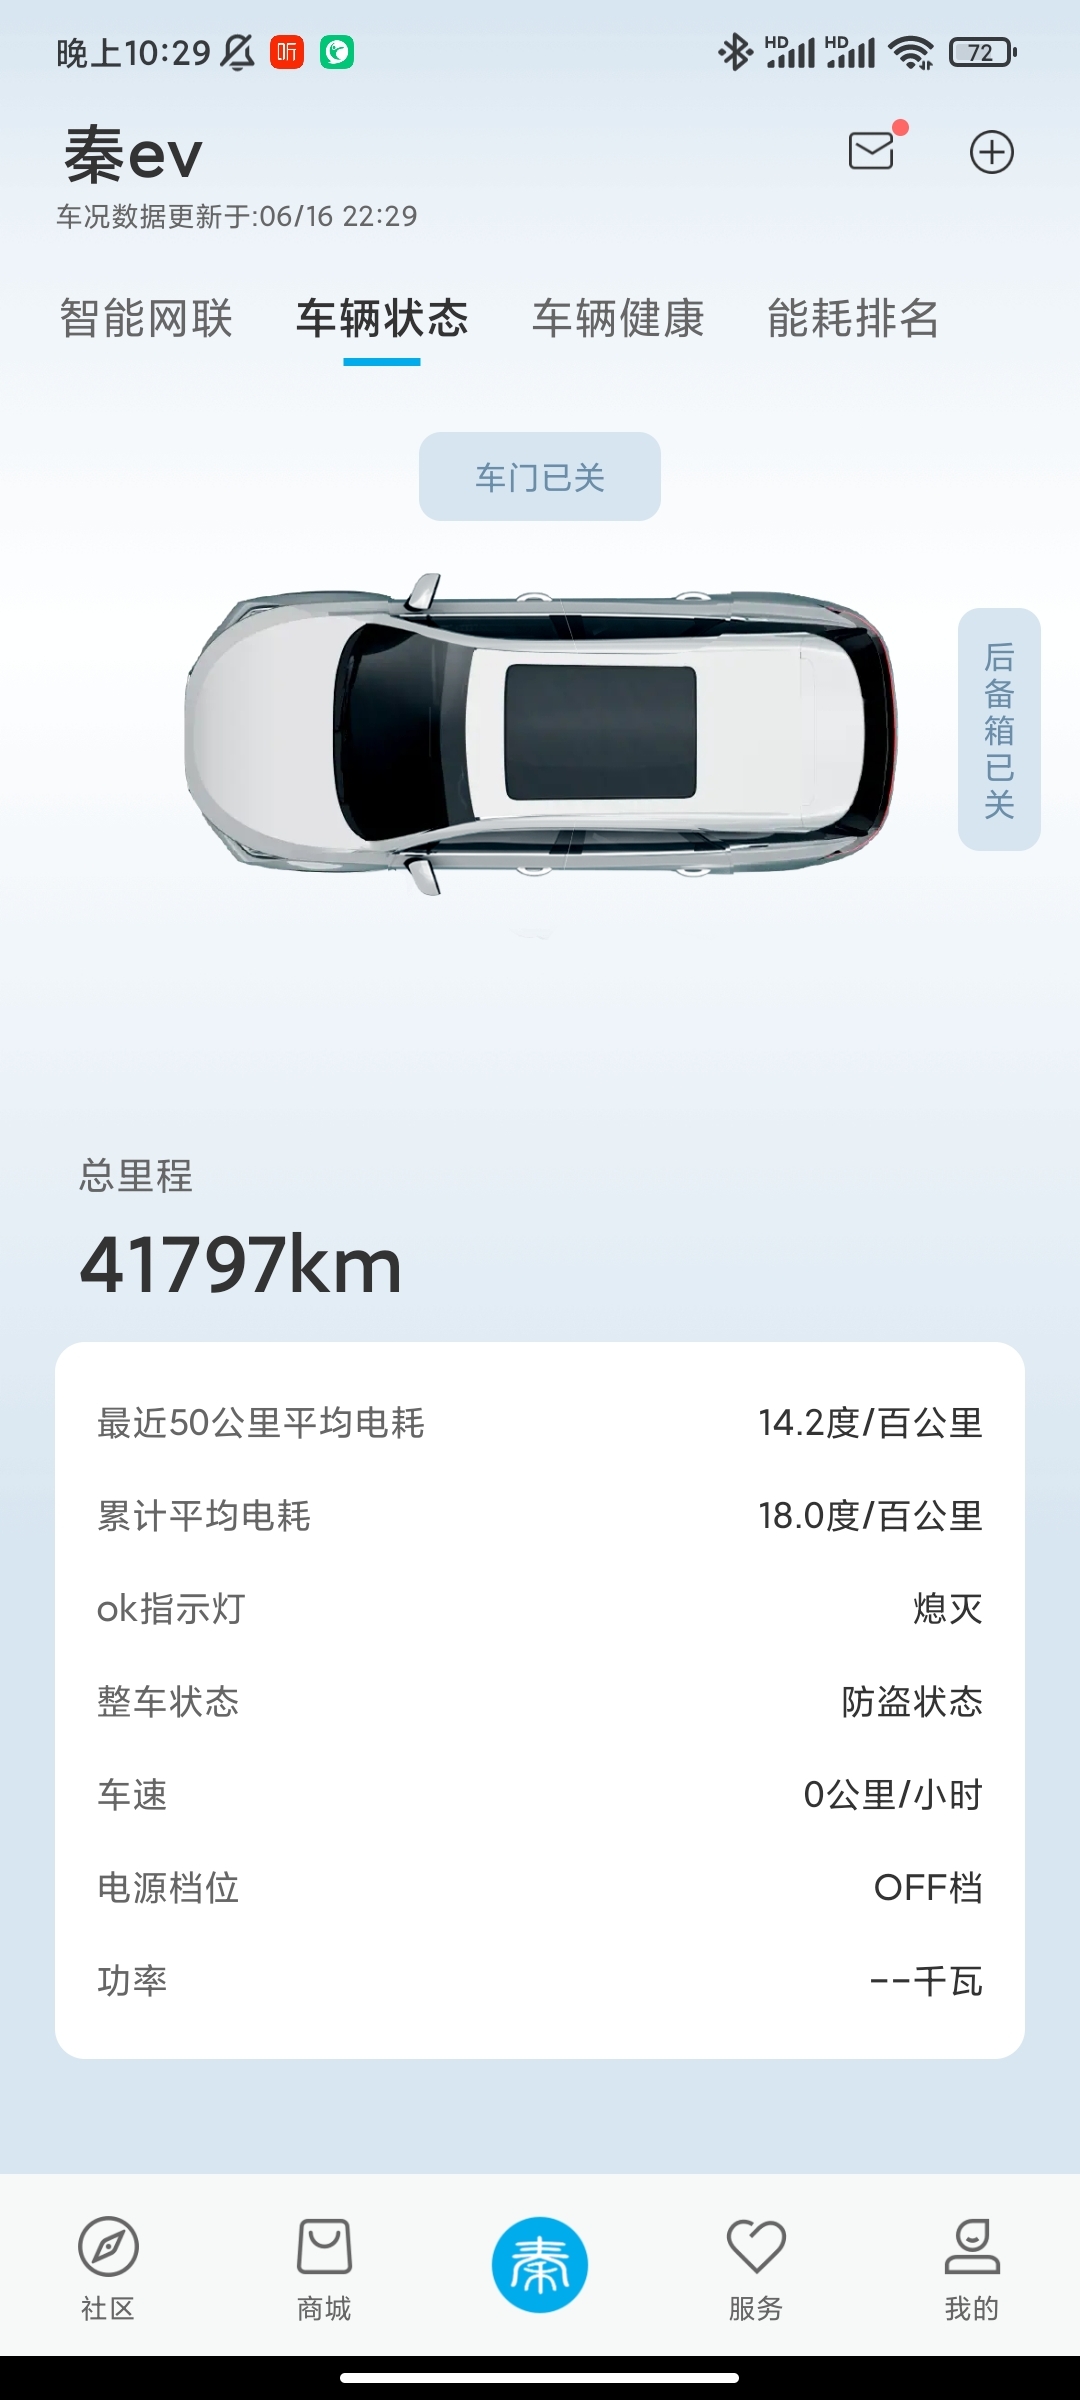 -城市：北京
-温度：27度
车型型号：秦ev450尊享版
-能耗表现14.2kWh
-其他备注：市区代步，时速40左右，运动模式，动能回收最大。